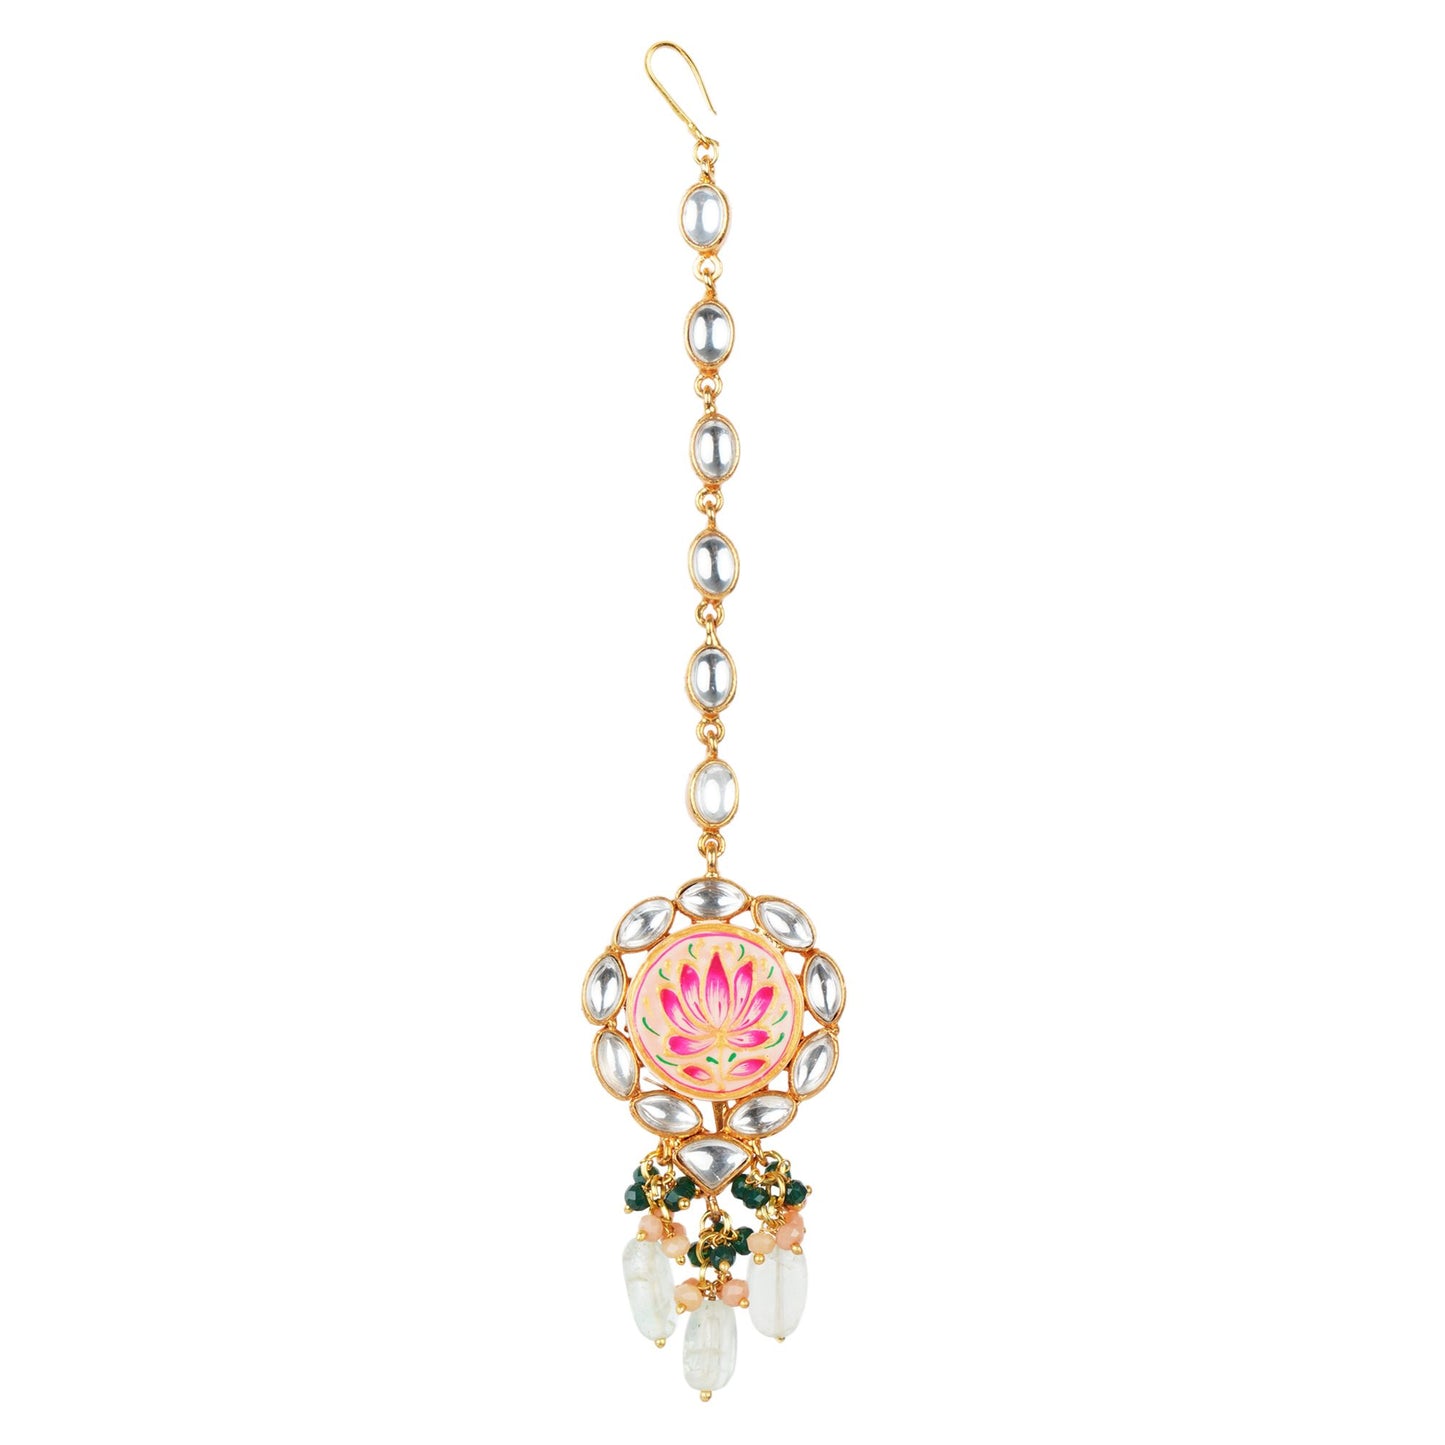 Dazzling Kundan Necklace Set